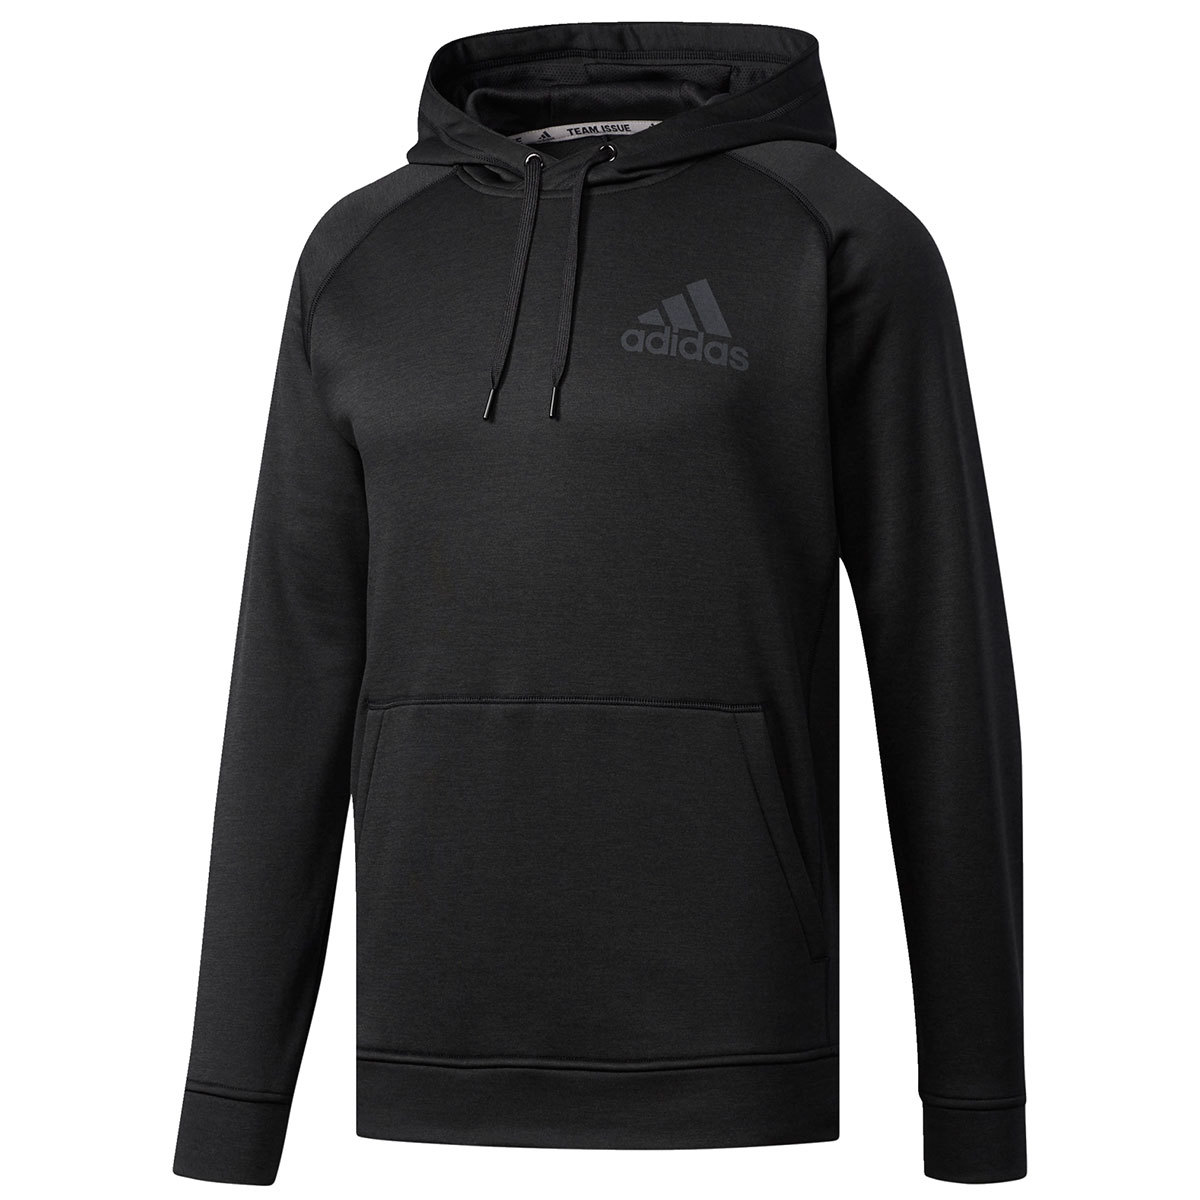 adidas men's team issue raglan hoodie